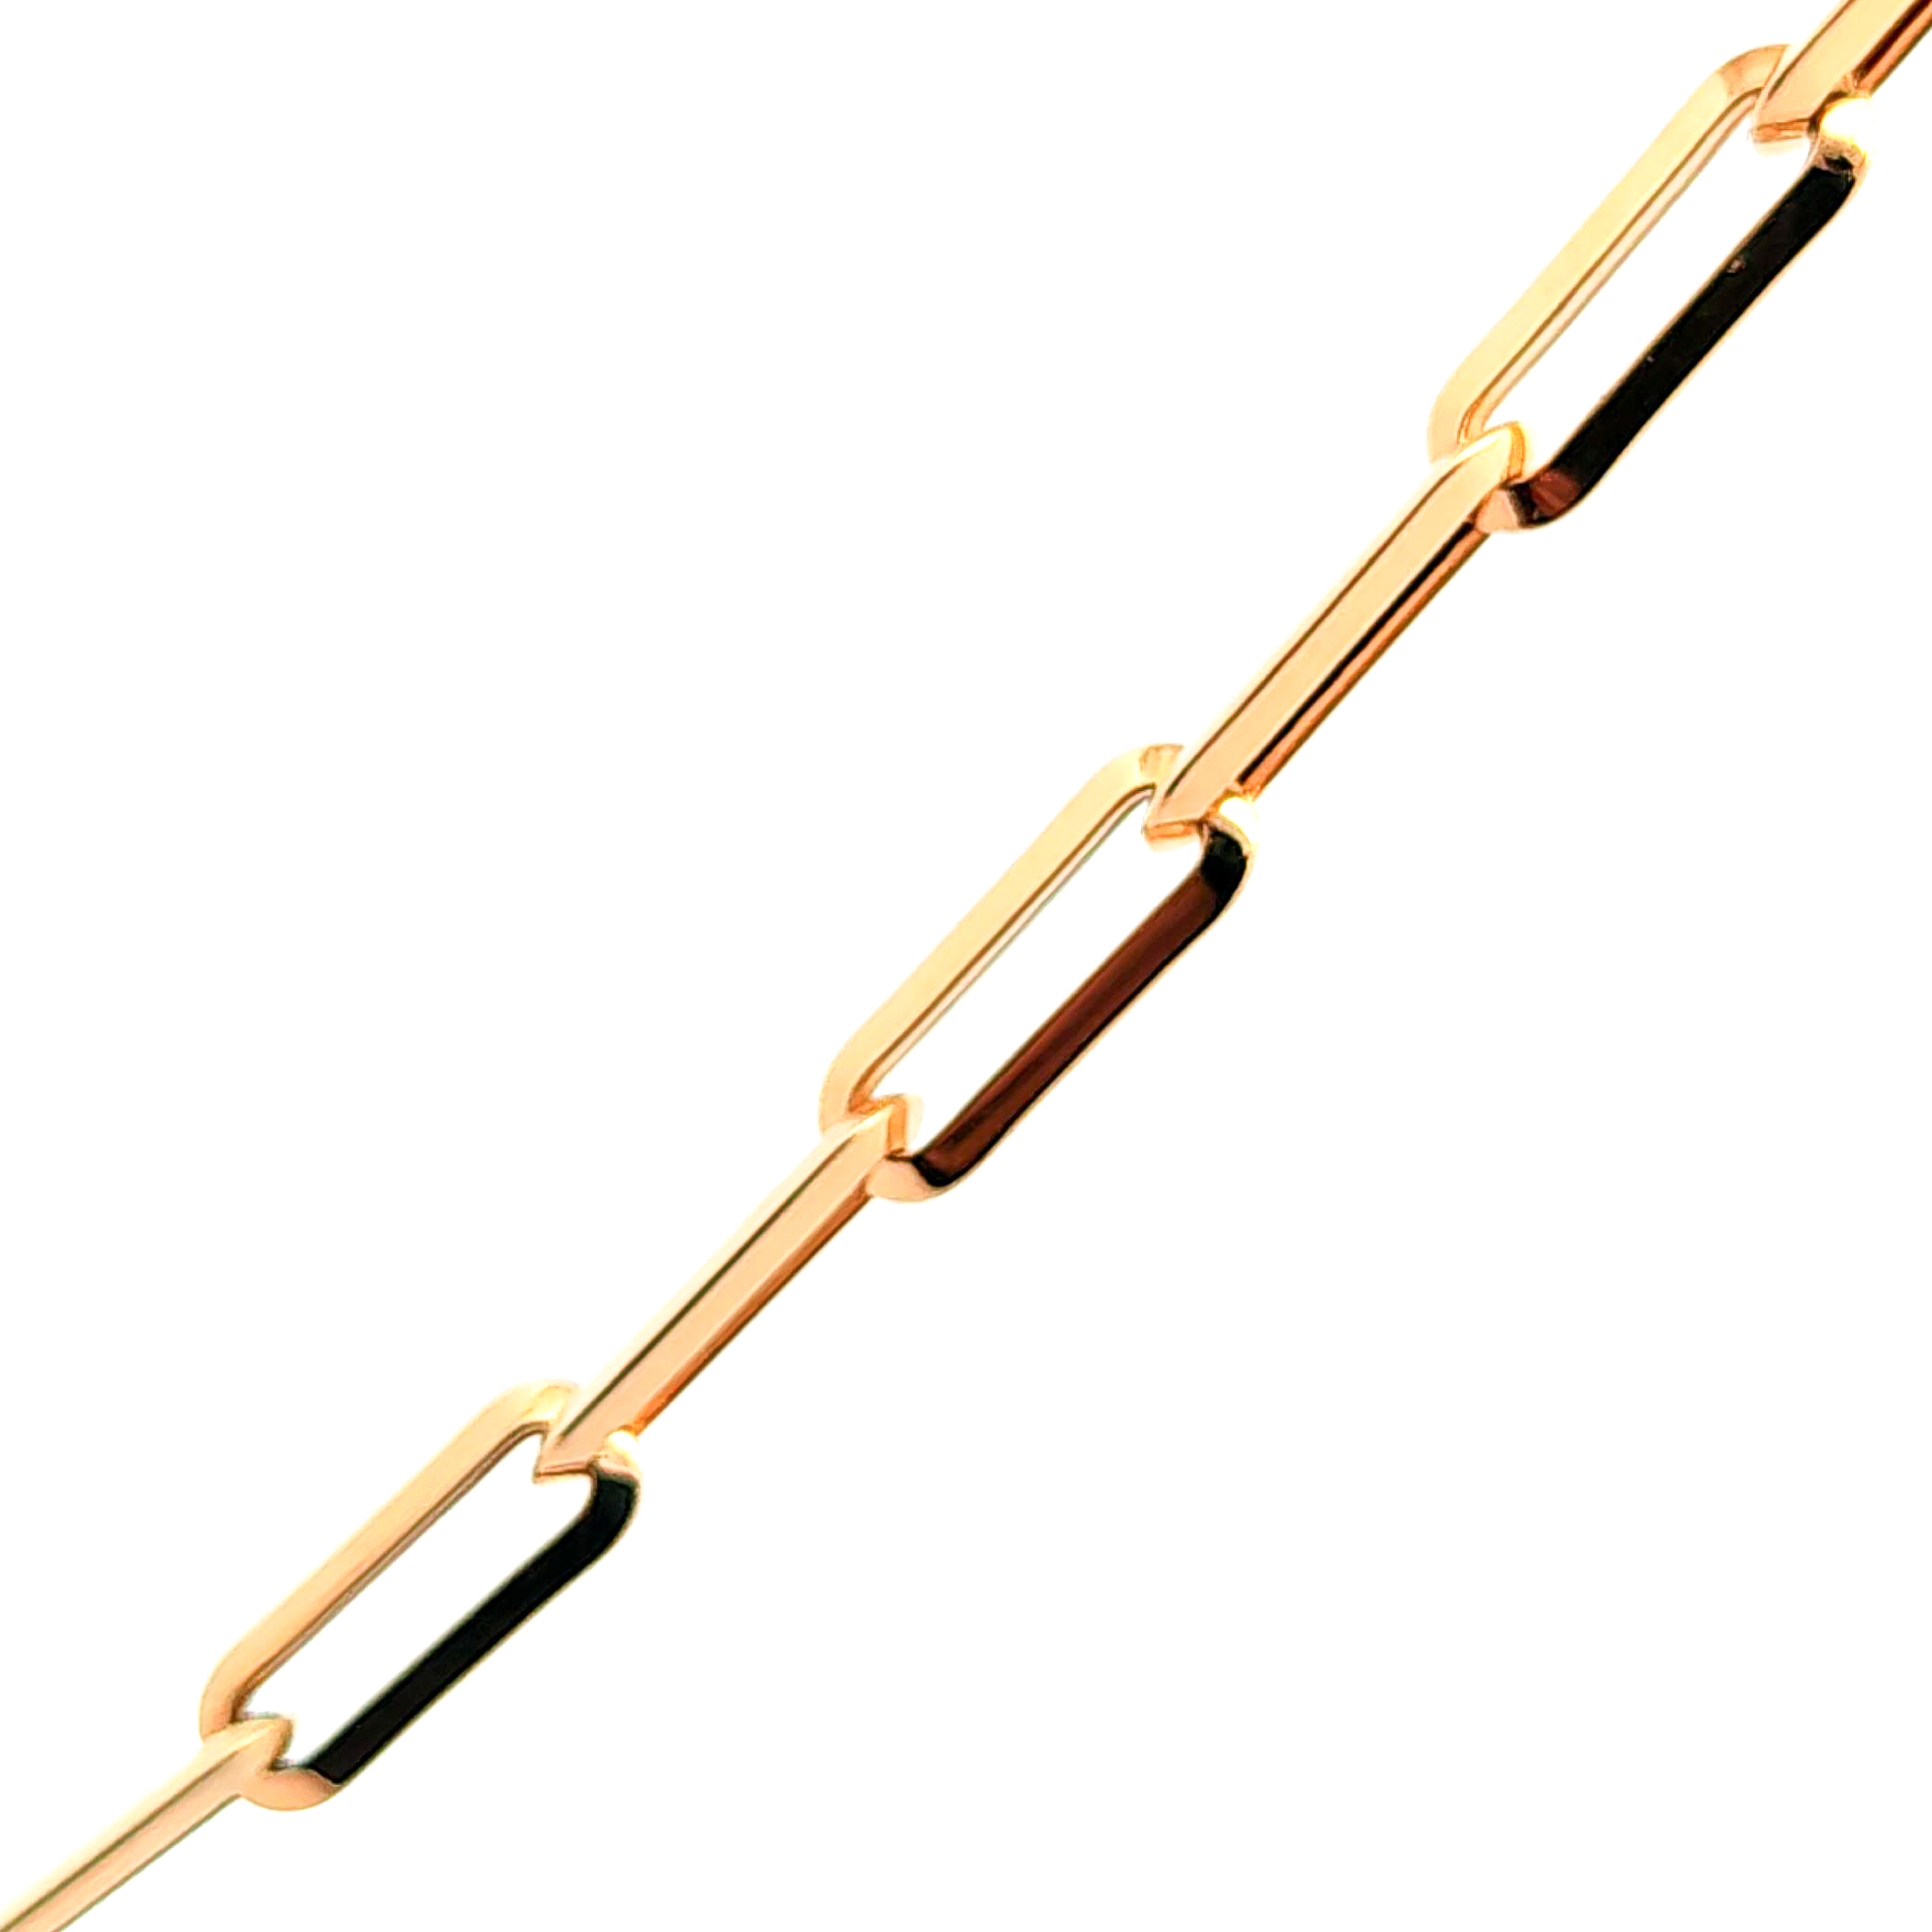 Cadena de oro 18k de eslabones grandes, peso 10,42 grs, medida 50 cm 2